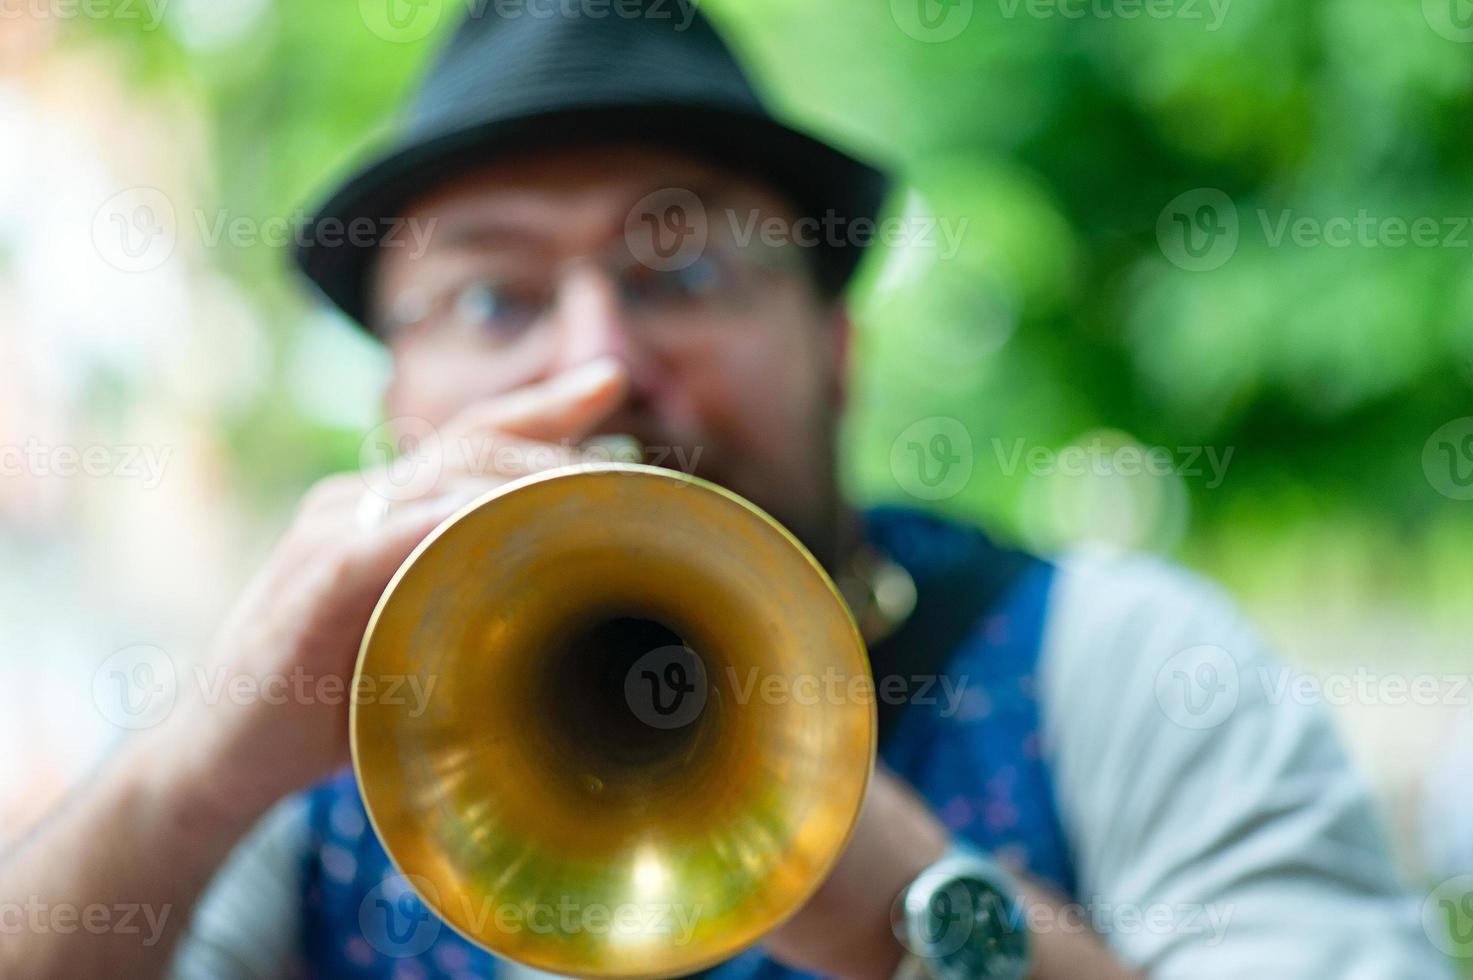 trumpet hål av en balkan musik gata musiker foto